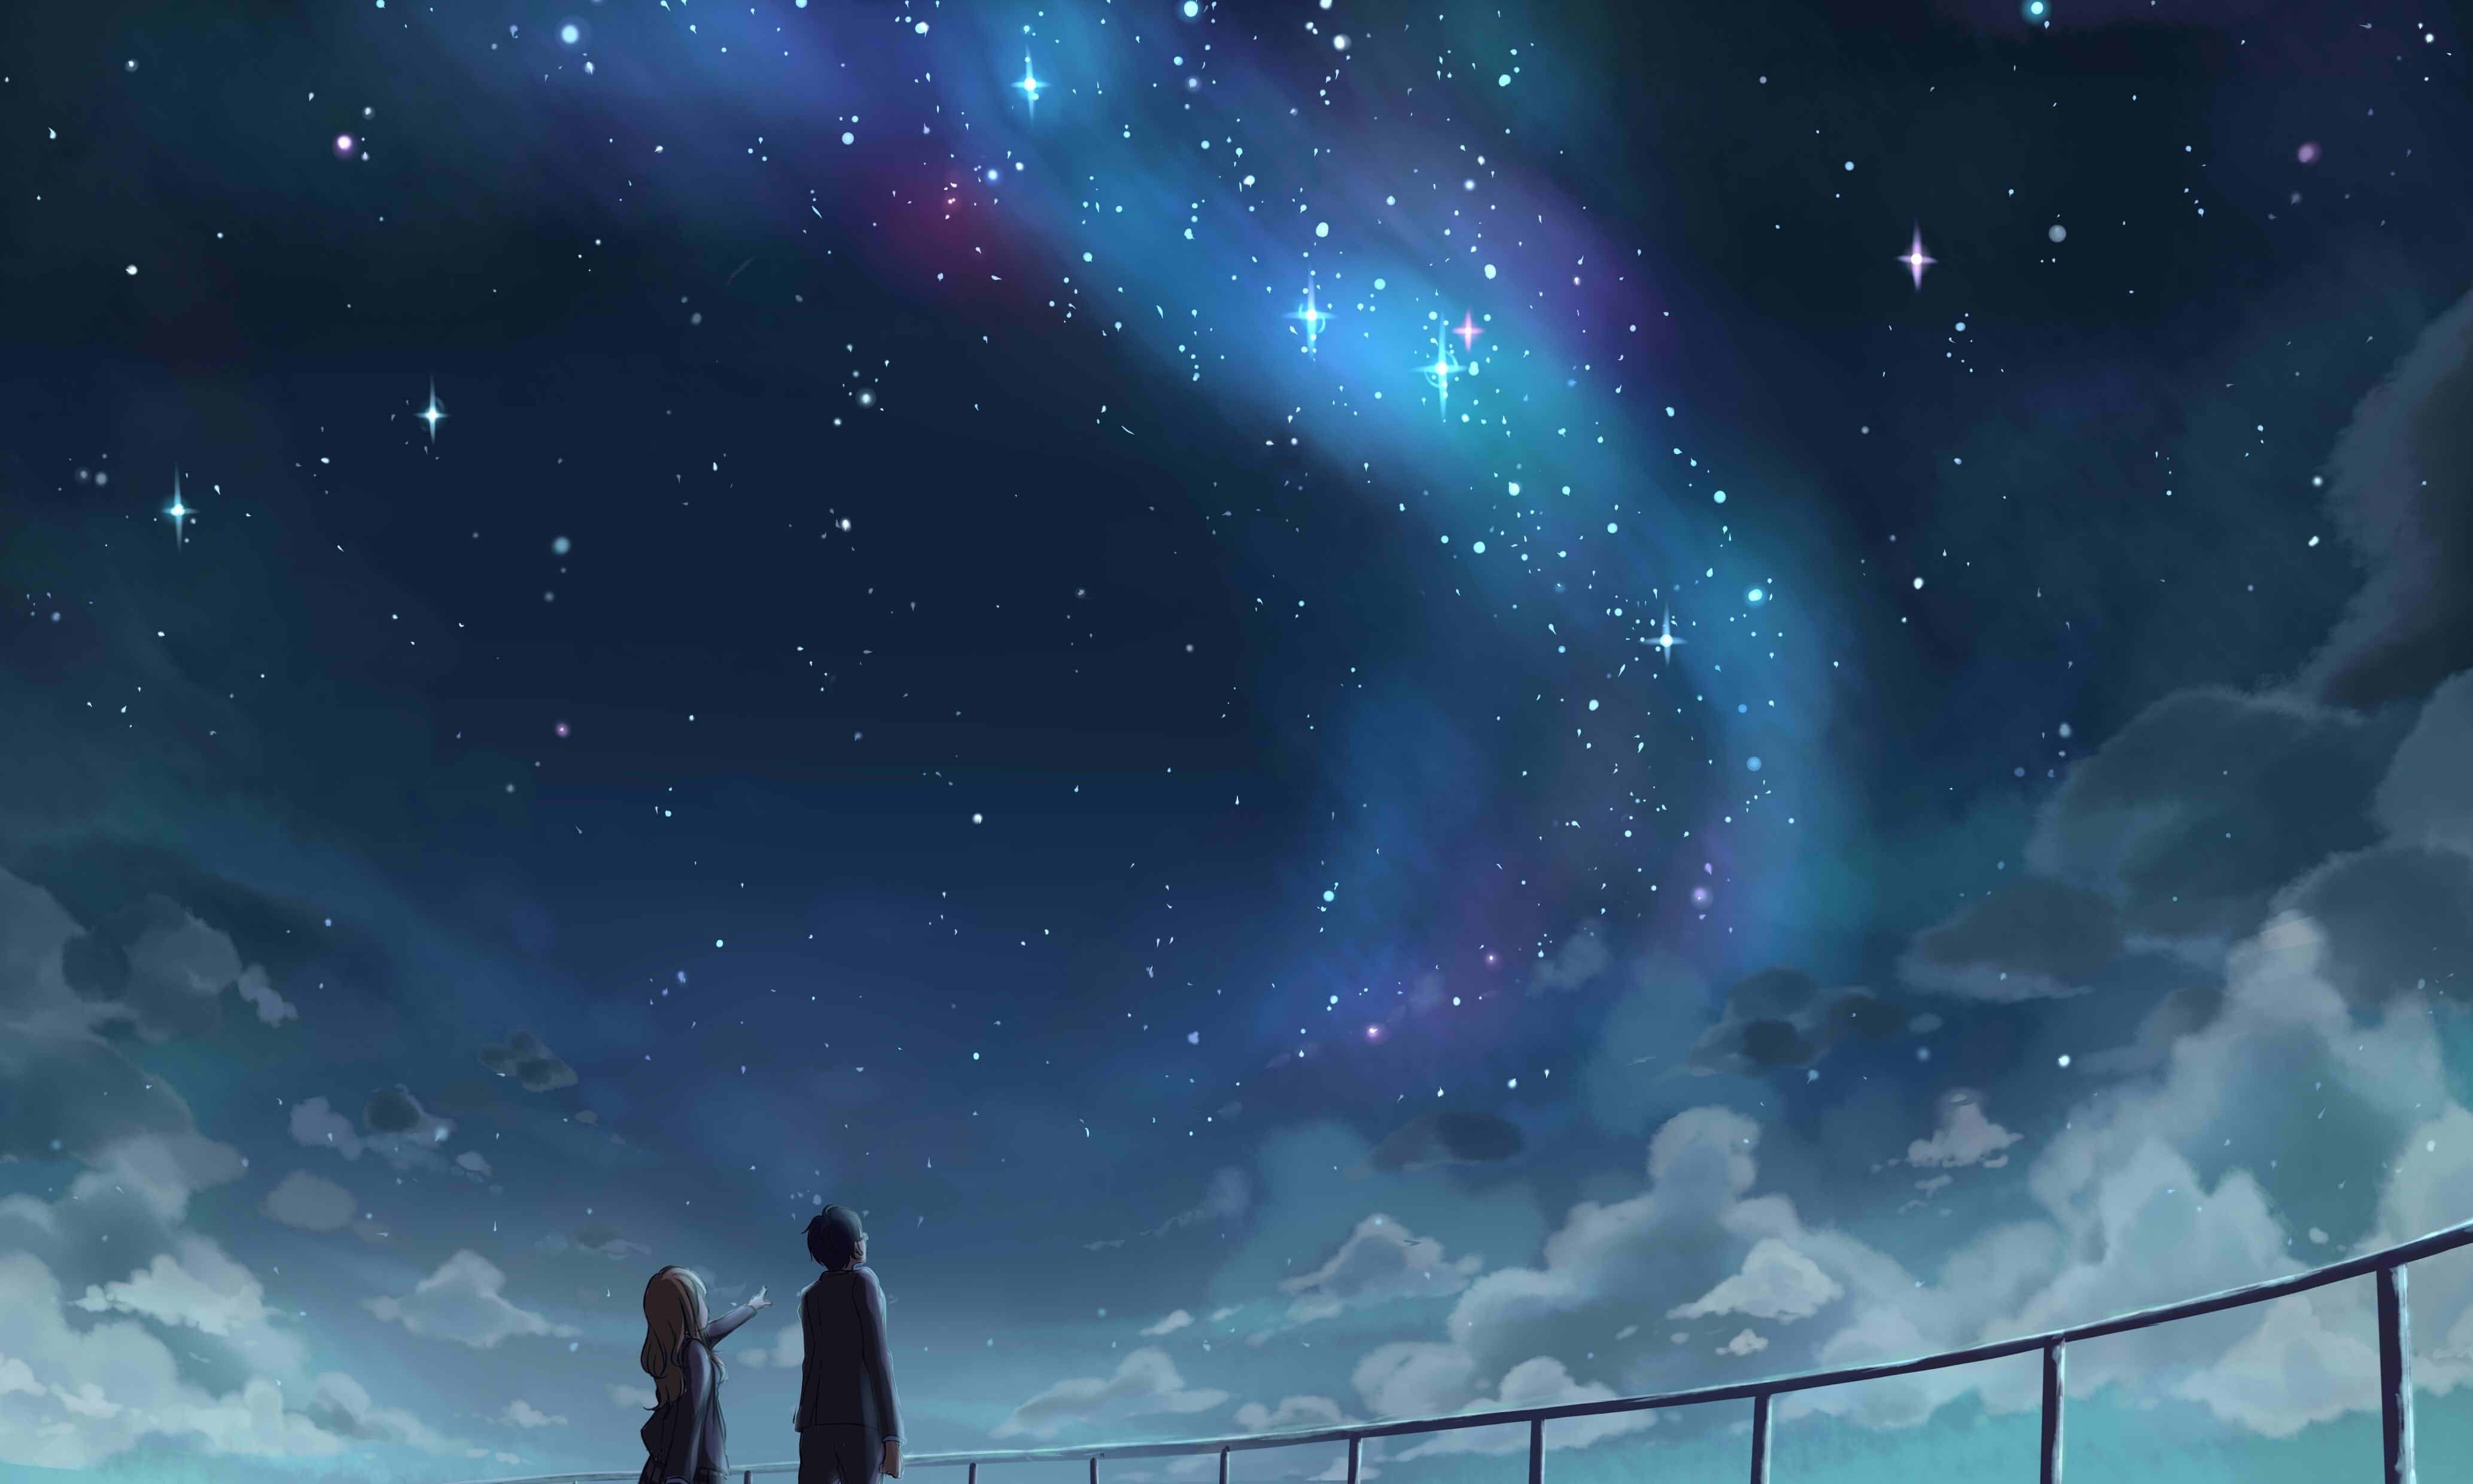 Hình nền anime galaxy đẹp làm bạn phải trầm trồ trước cảnh sắc đẹp của vũ trụ. Tận hưởng không gian theo sở thích của mình và cảm nhận vẻ đẹp níu giữ tâm hồn. Những hình ảnh về những ngôi sao lấp lánh và những hành tinh đầy màu sắc sẽ dẫn bạn đến những kỷ niệm đẹp trong cuộc sống.